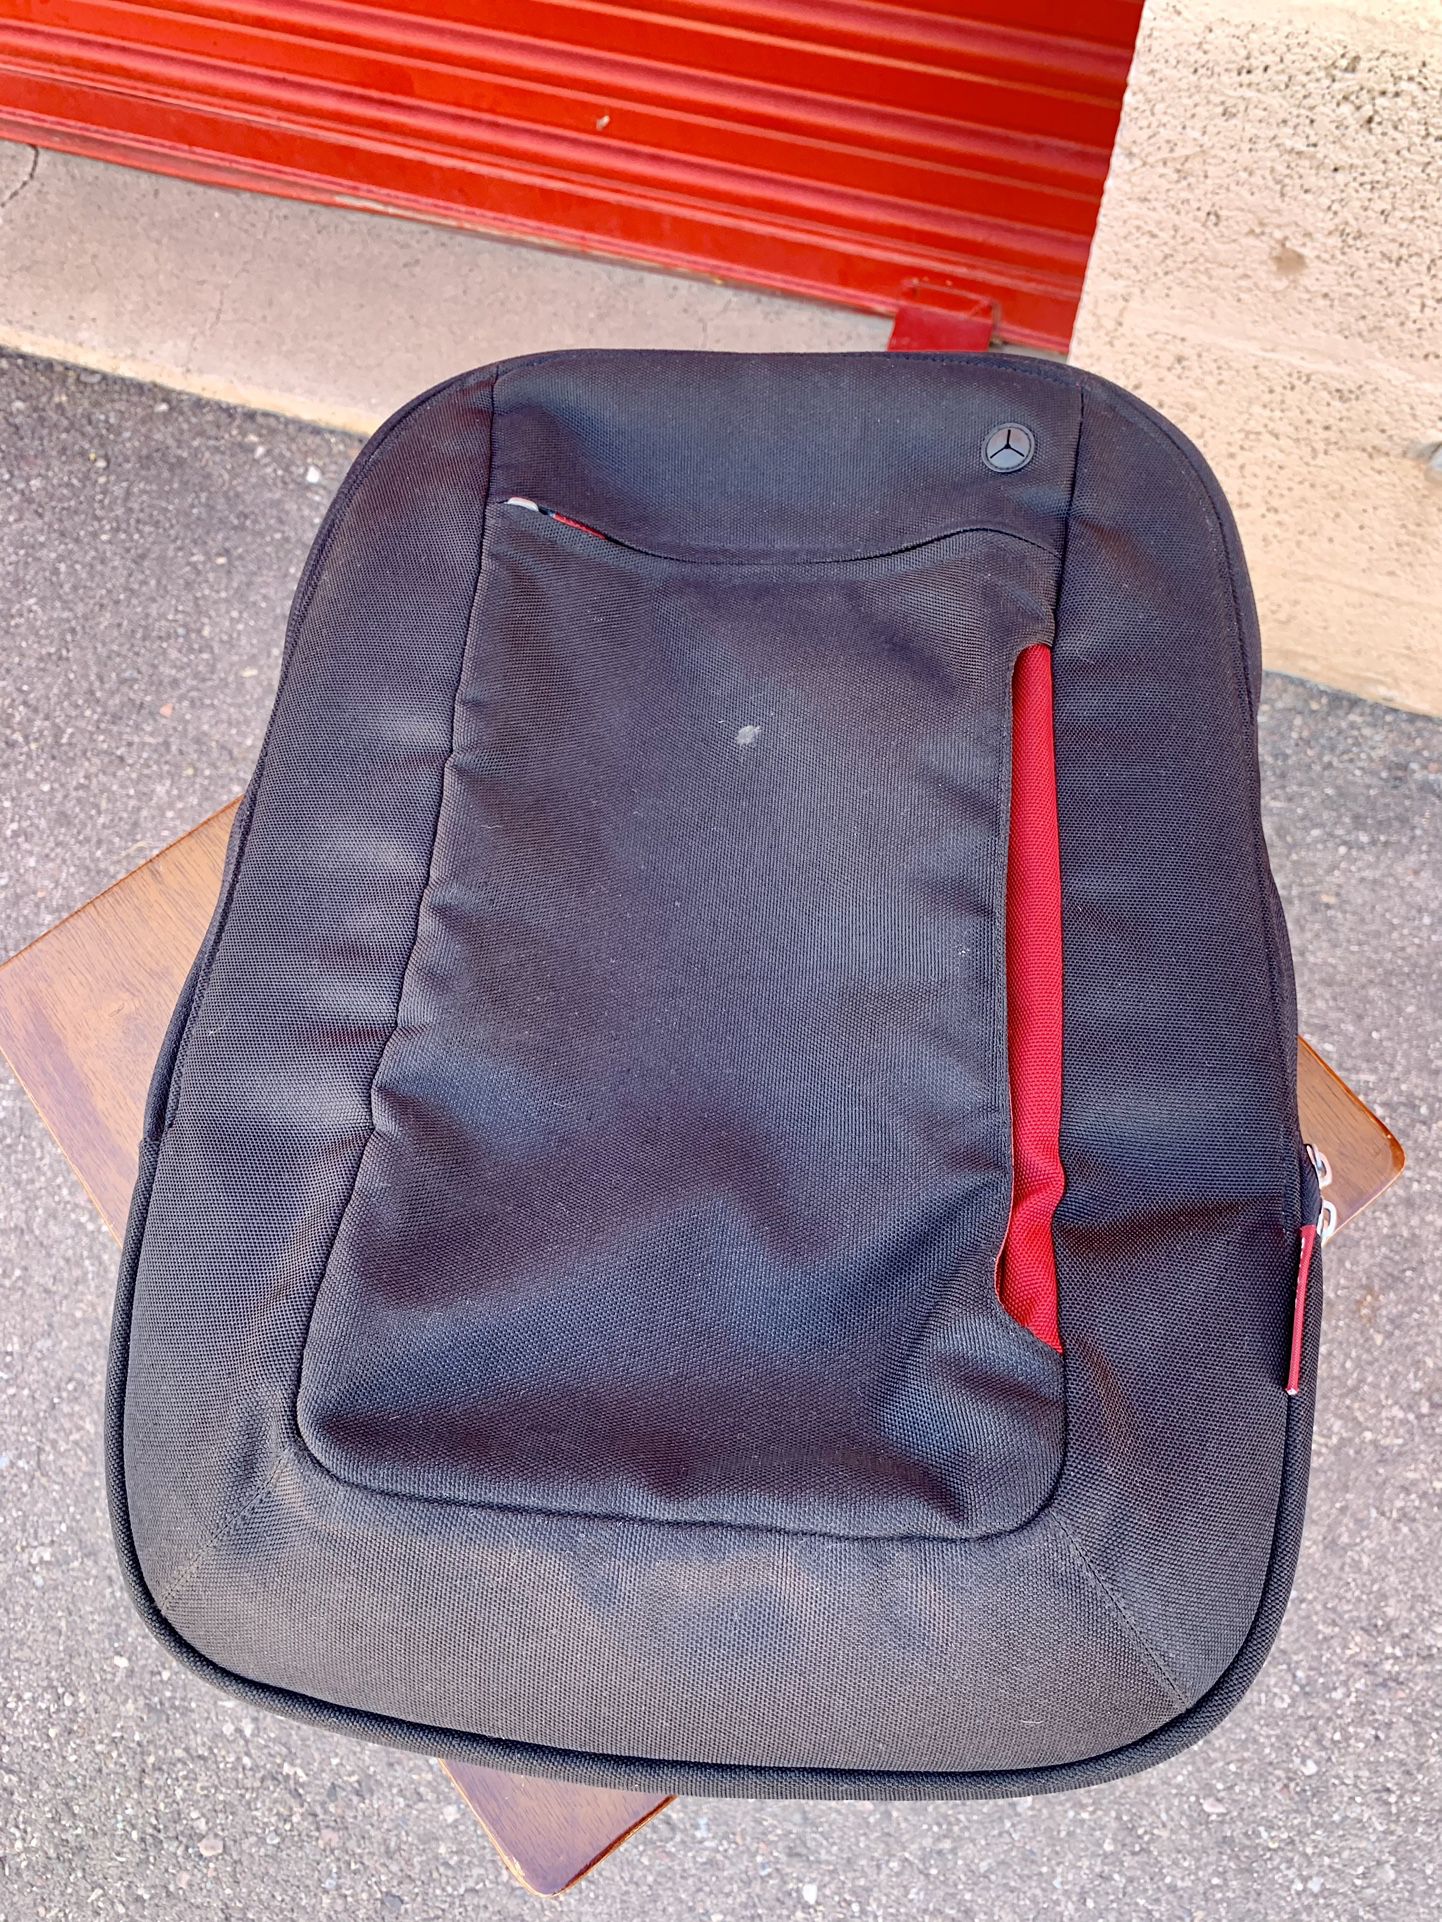 Belkin F8N159EABR Carrying Case (Backpack) for 17" Notebook, Cabernet